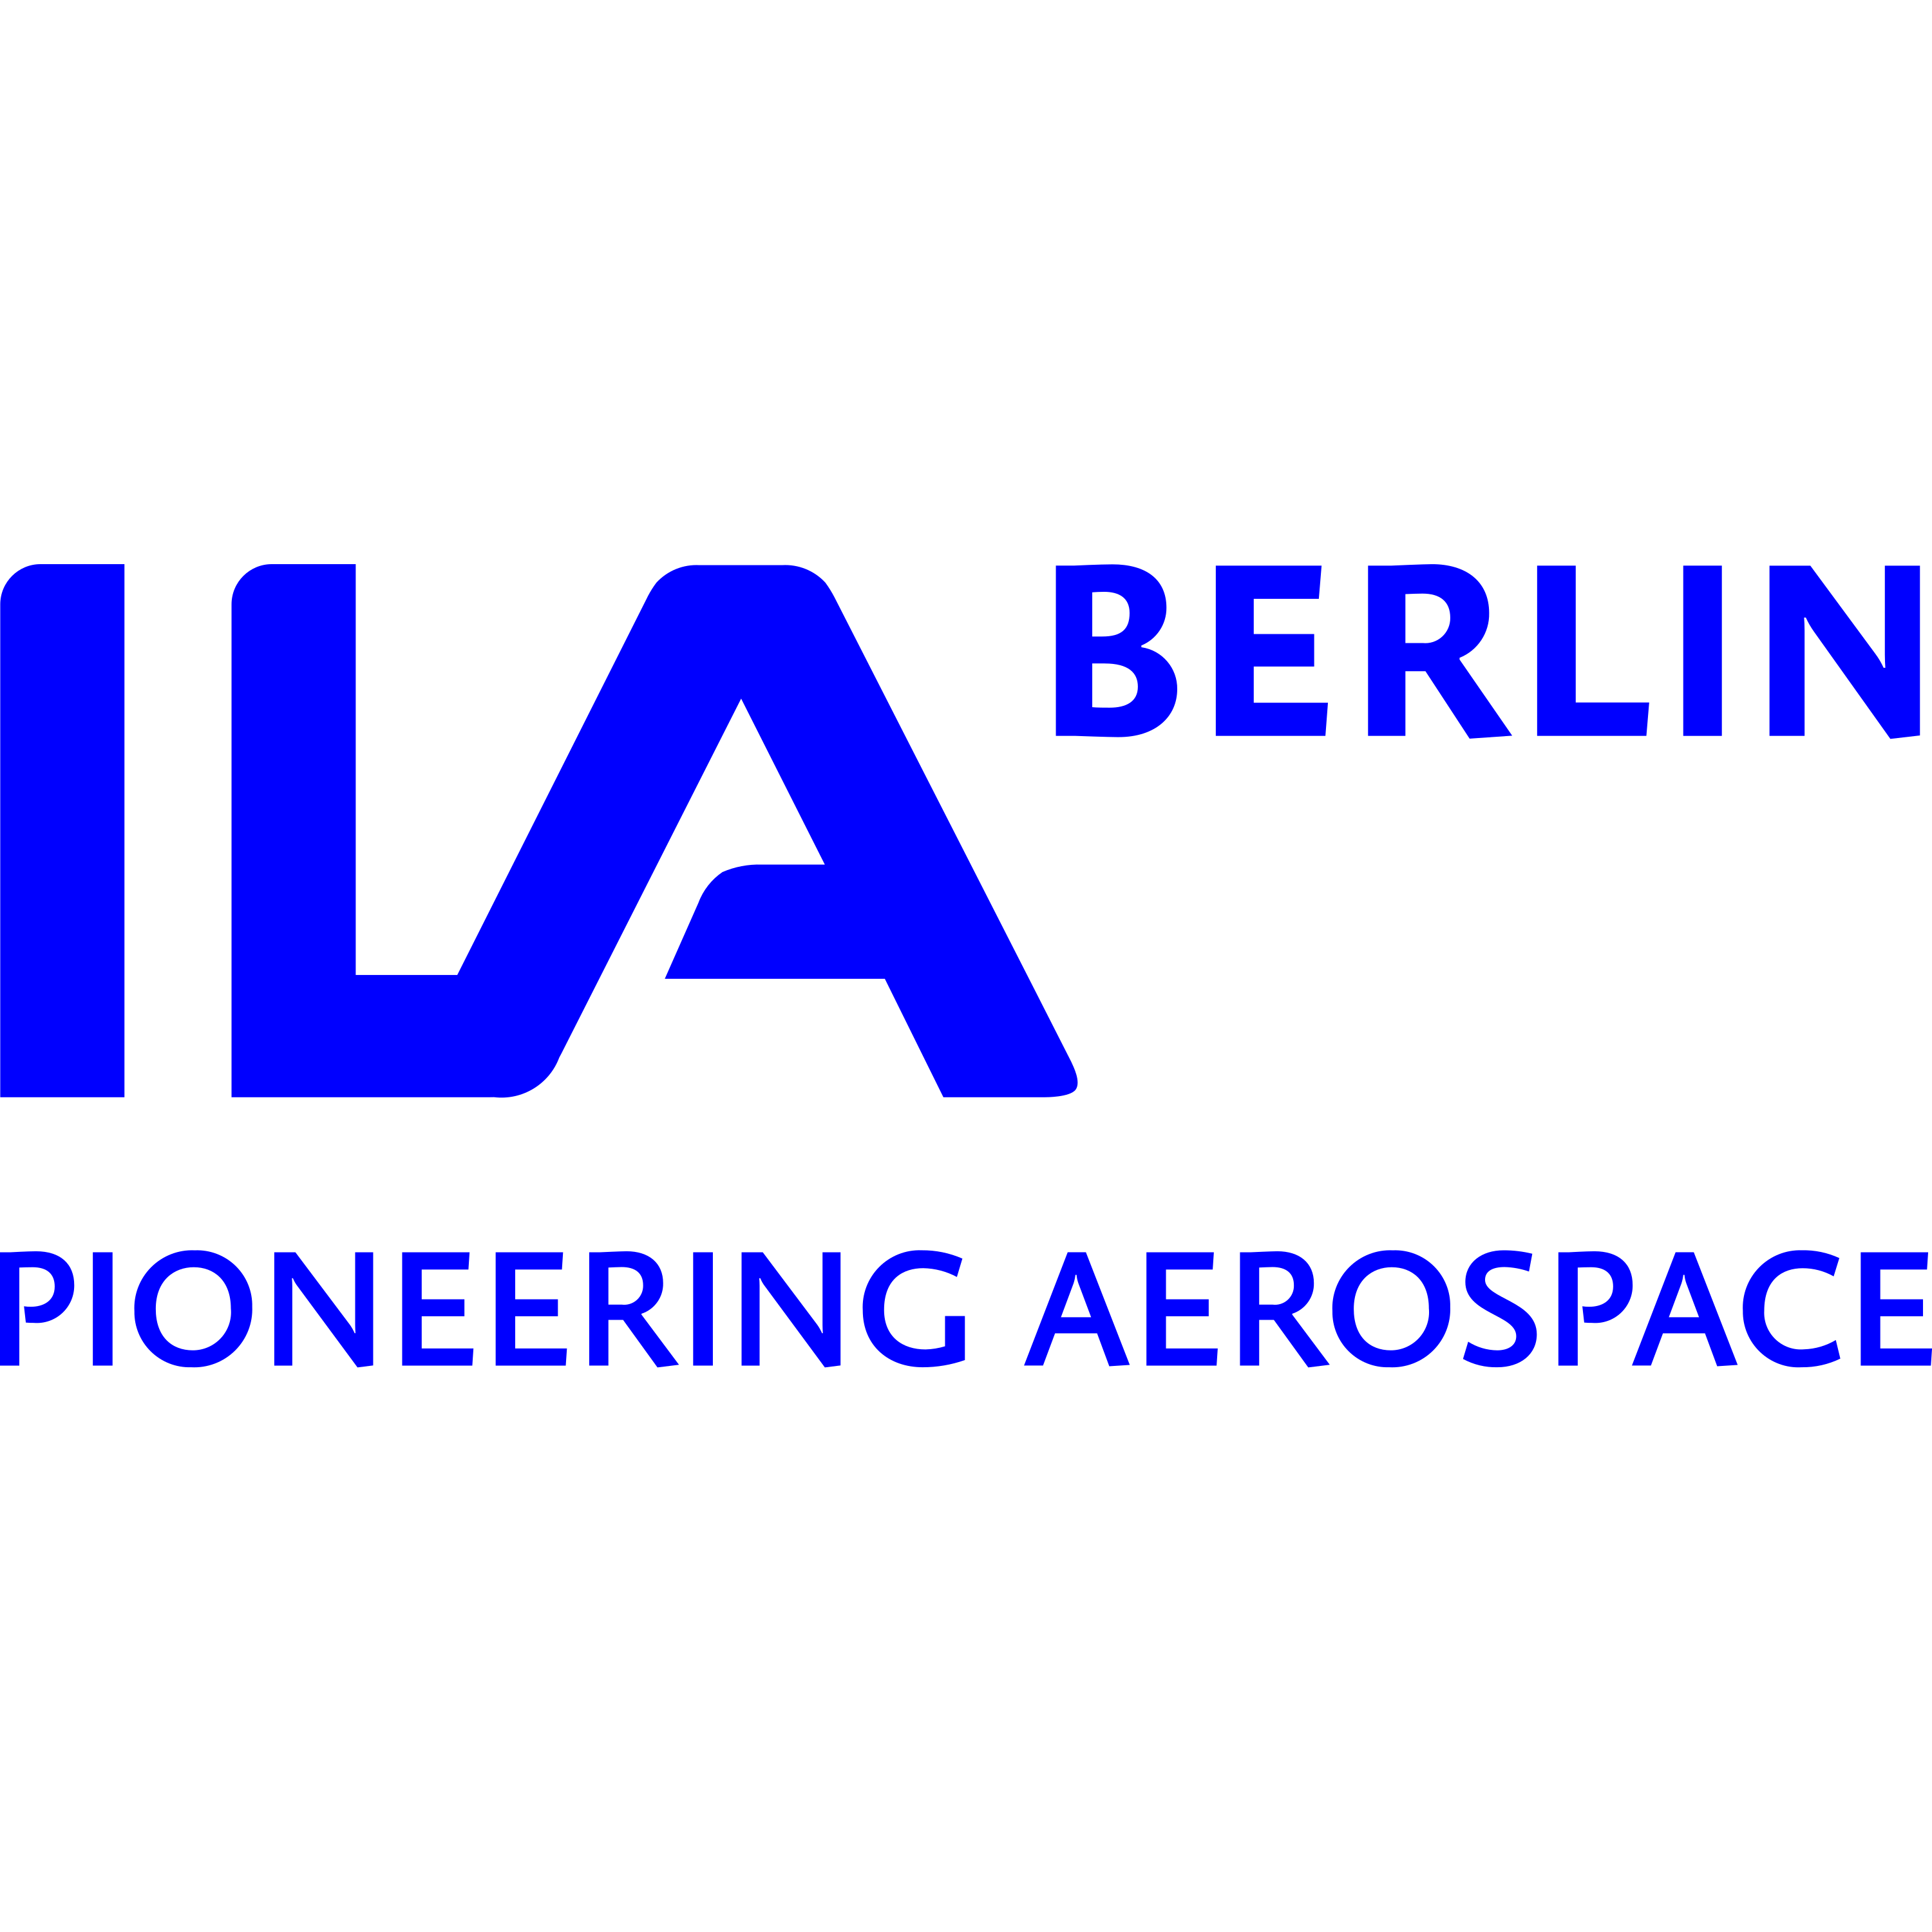 Ila Berlin Logo Transparent Picture